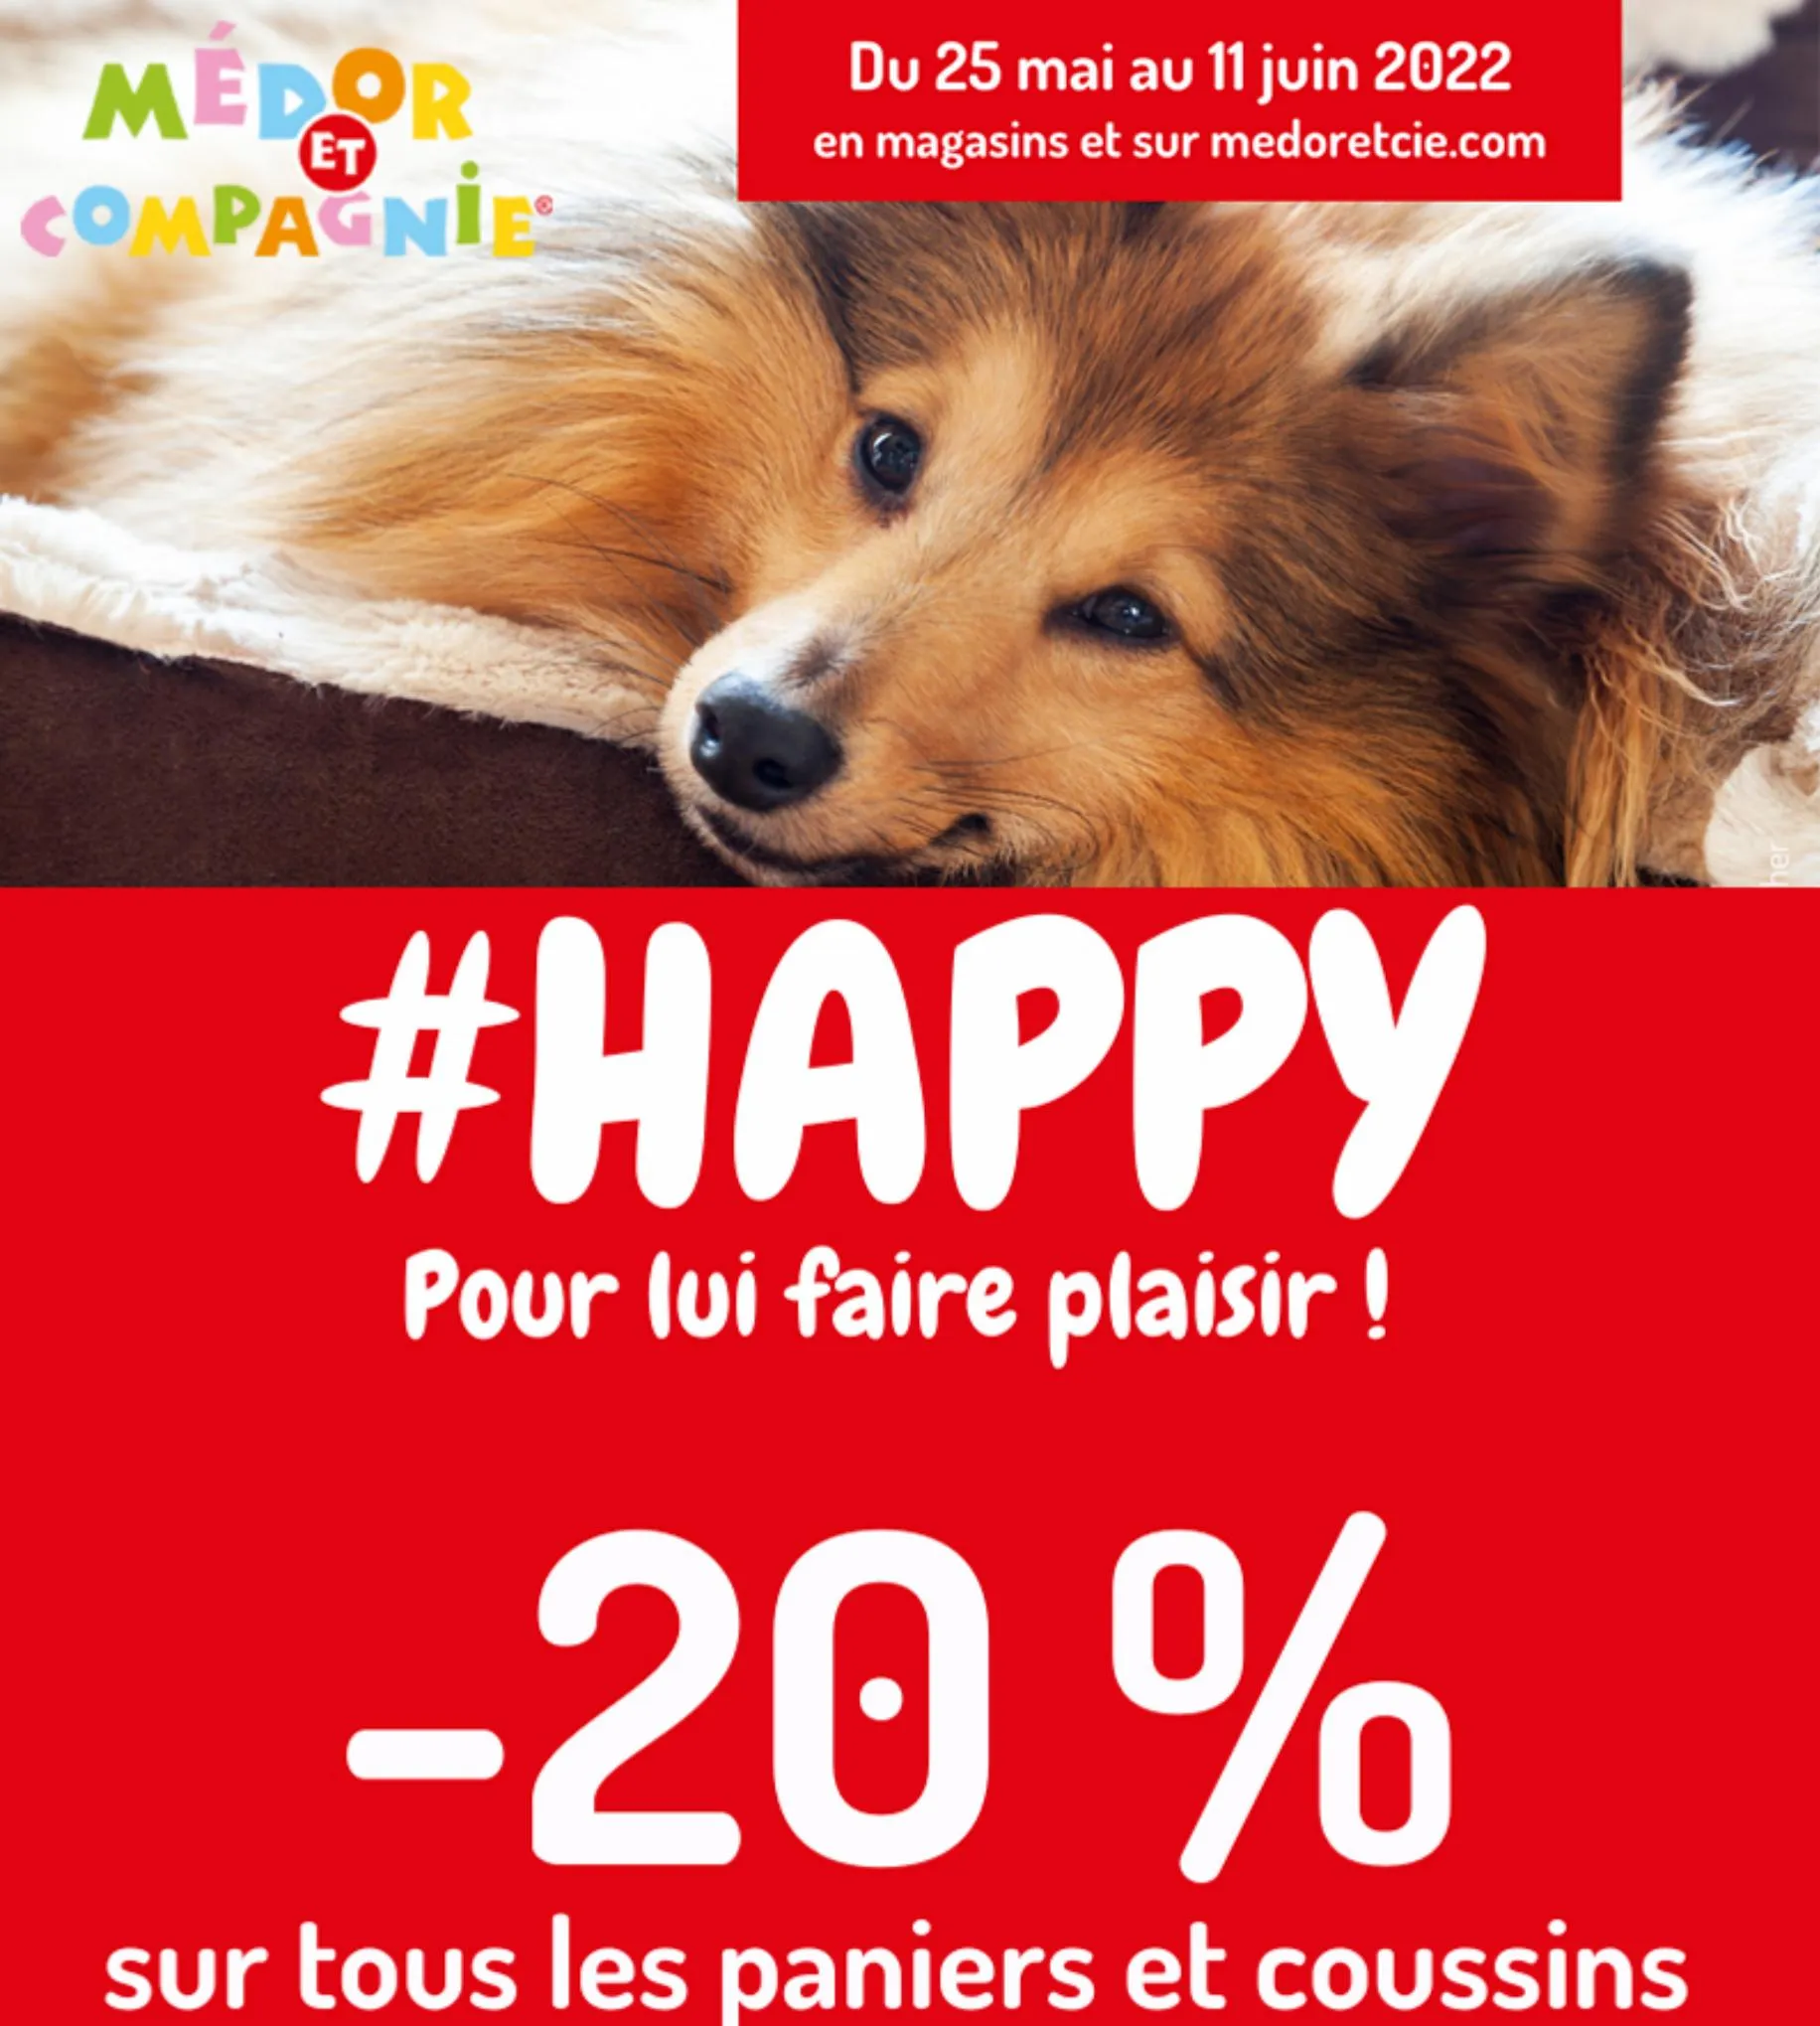 Catalogue Les offres #HAPPY - Paniers et coussins, page 00001